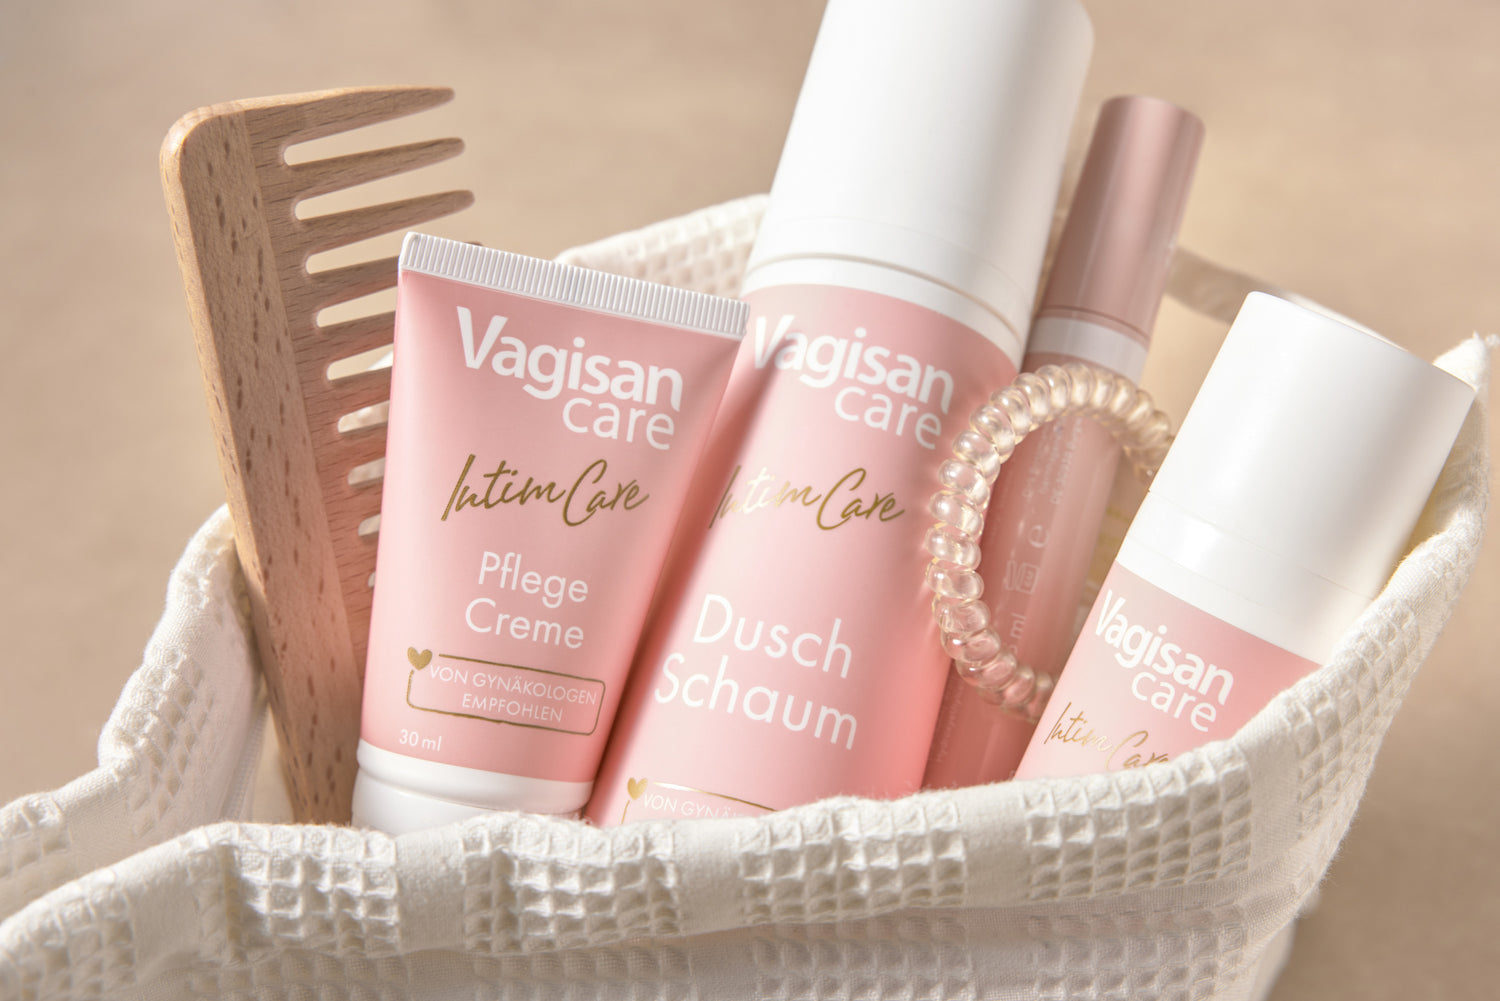 Kulturbeutel mit VagisanCare Produkten als Sinnbild für die Intimpflege nach der Intimrasur